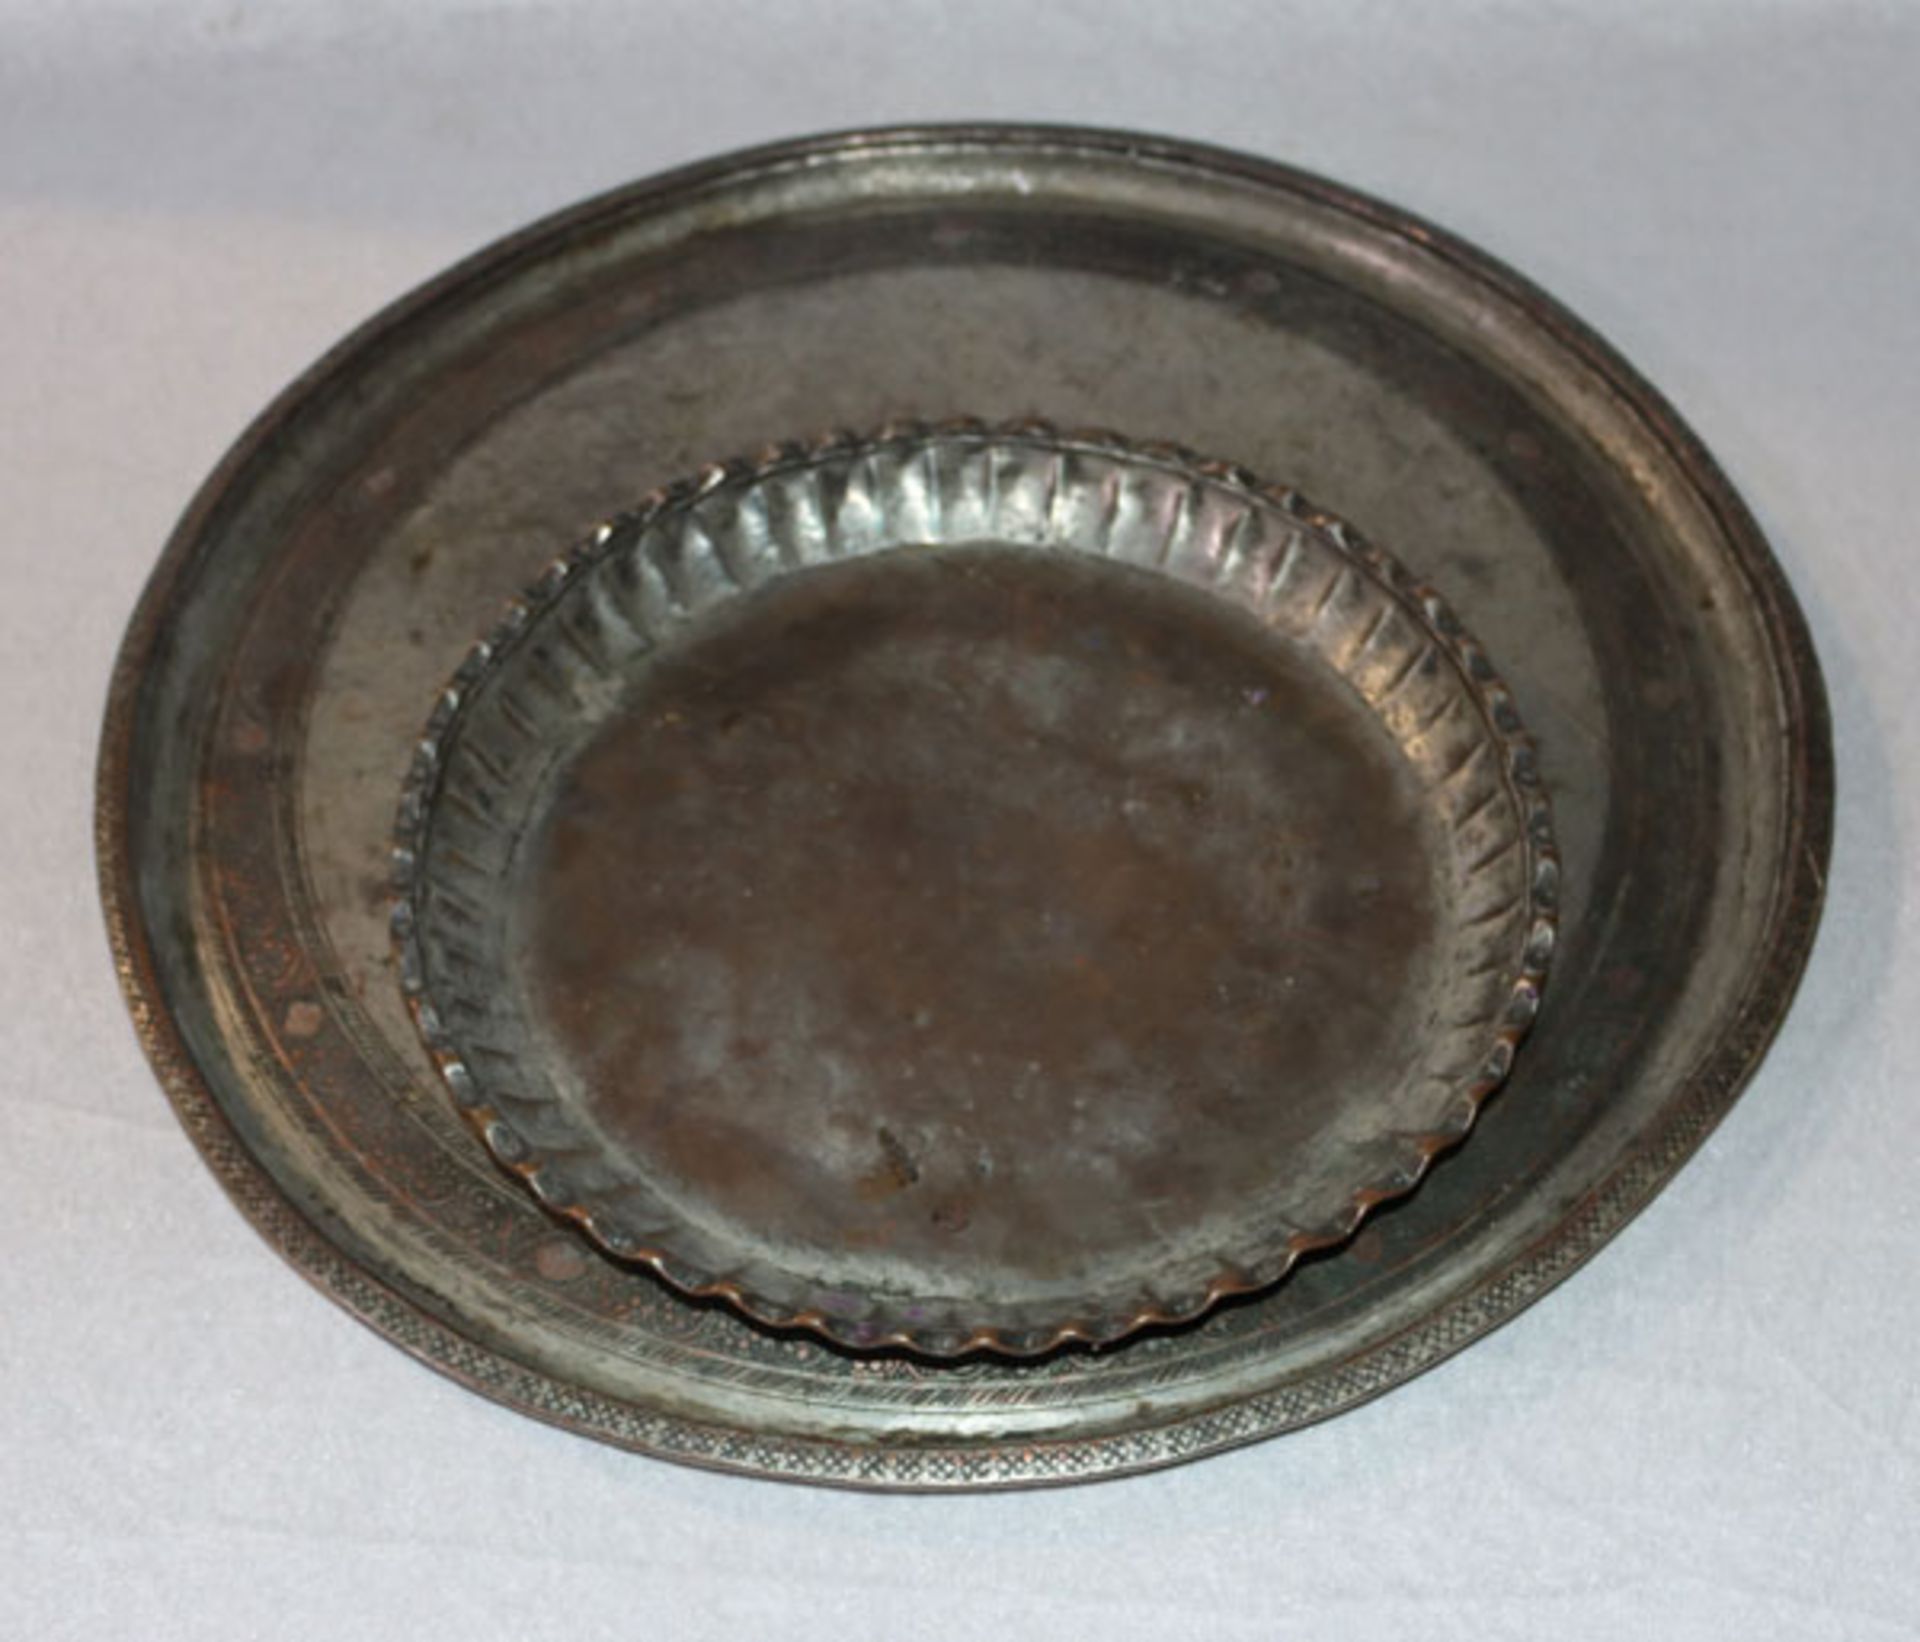 Metall Tablett mit graviertem Dekor, D 45 cm, und Metall Schale, D 29 cm, Alters- und